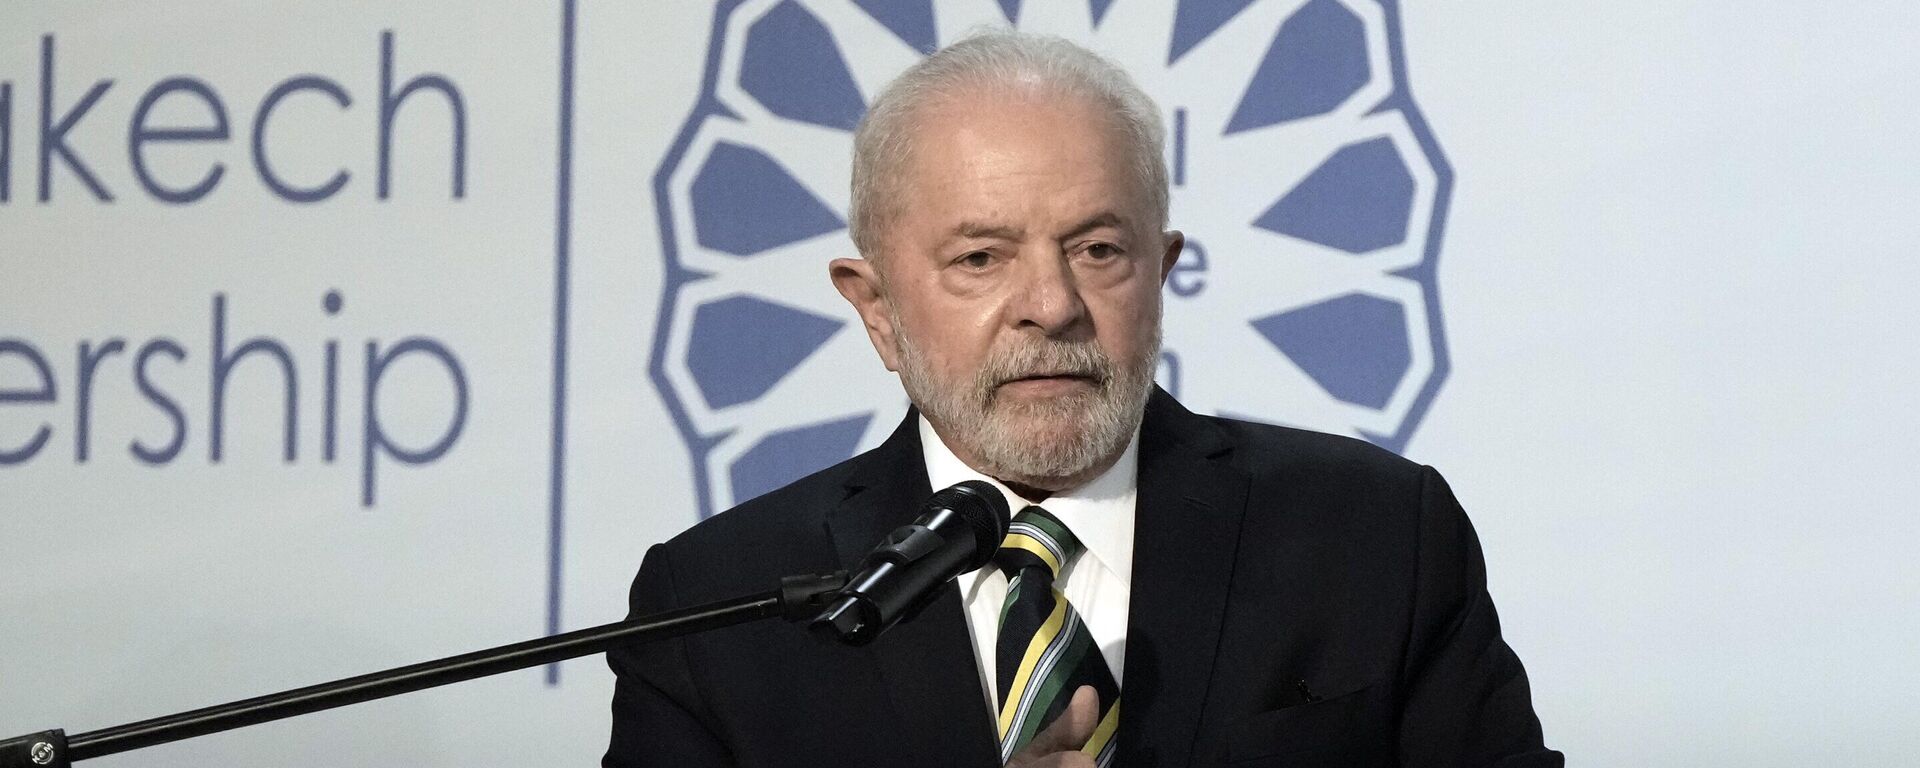 O presidente eleito do Brasil, Luiz Inácio Lula da Silva, fala na COP27, a cúpula do clima das Nações Unidas, em 16 de novembro de 2022, em Sharm el-Sheikh, no Egito - Sputnik Brasil, 1920, 18.11.2022